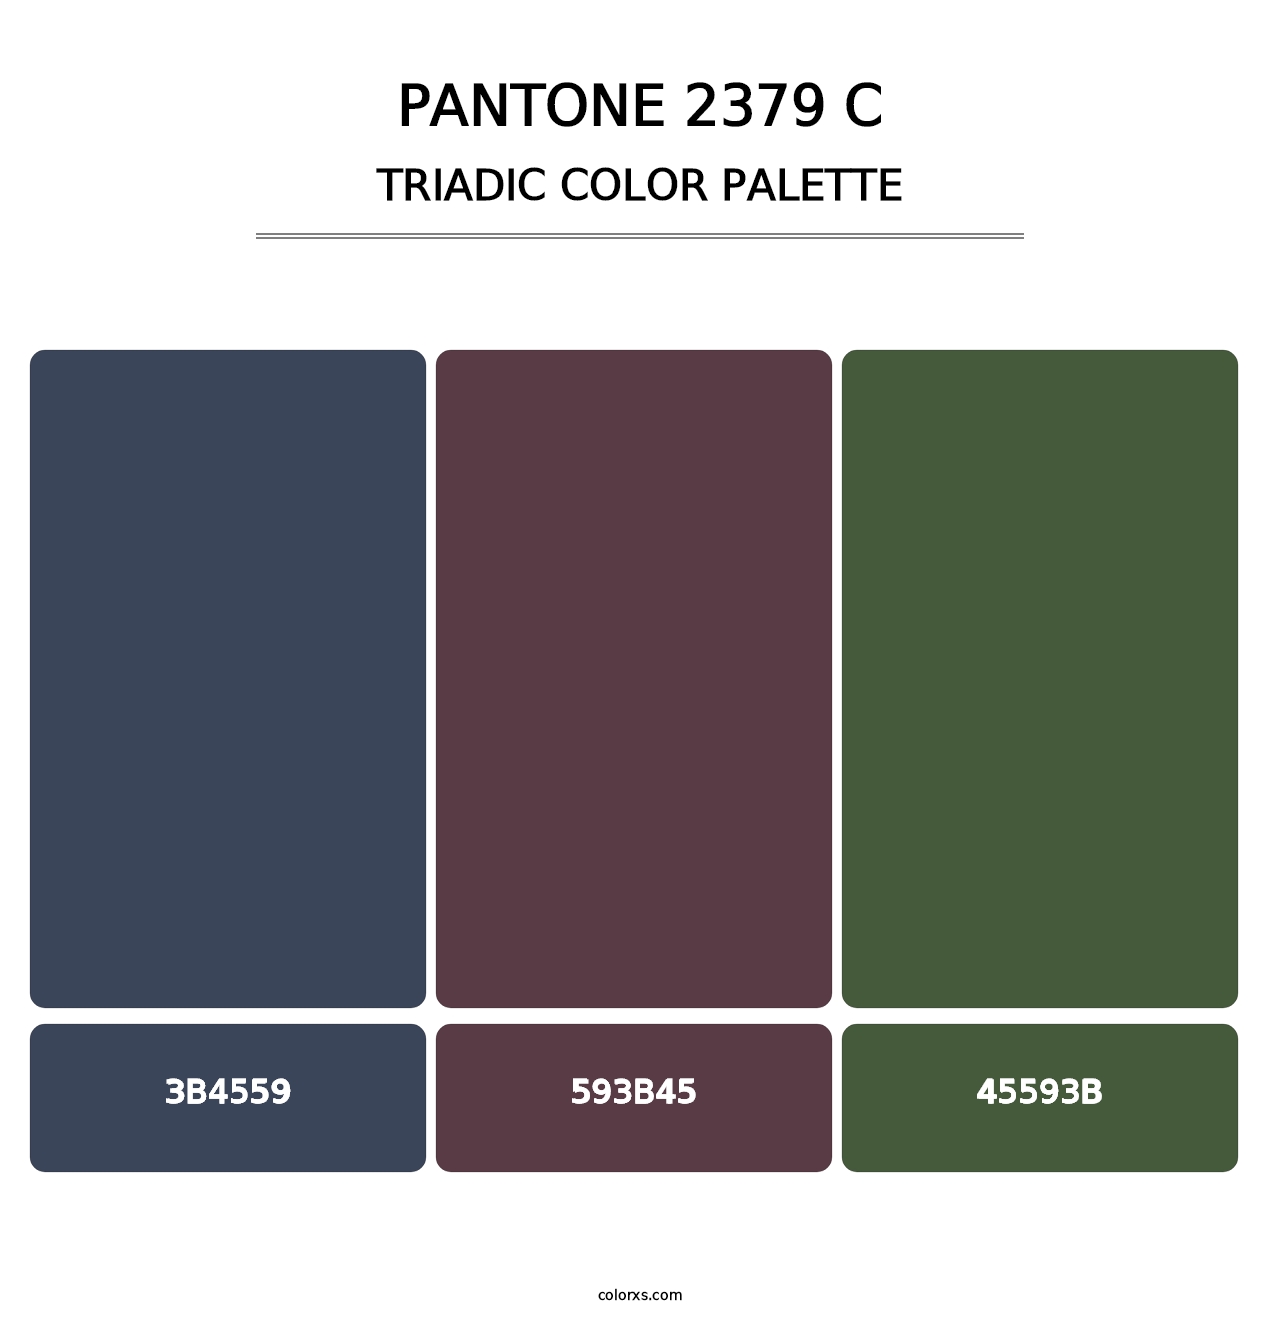 PANTONE 2379 C - Triadic Color Palette